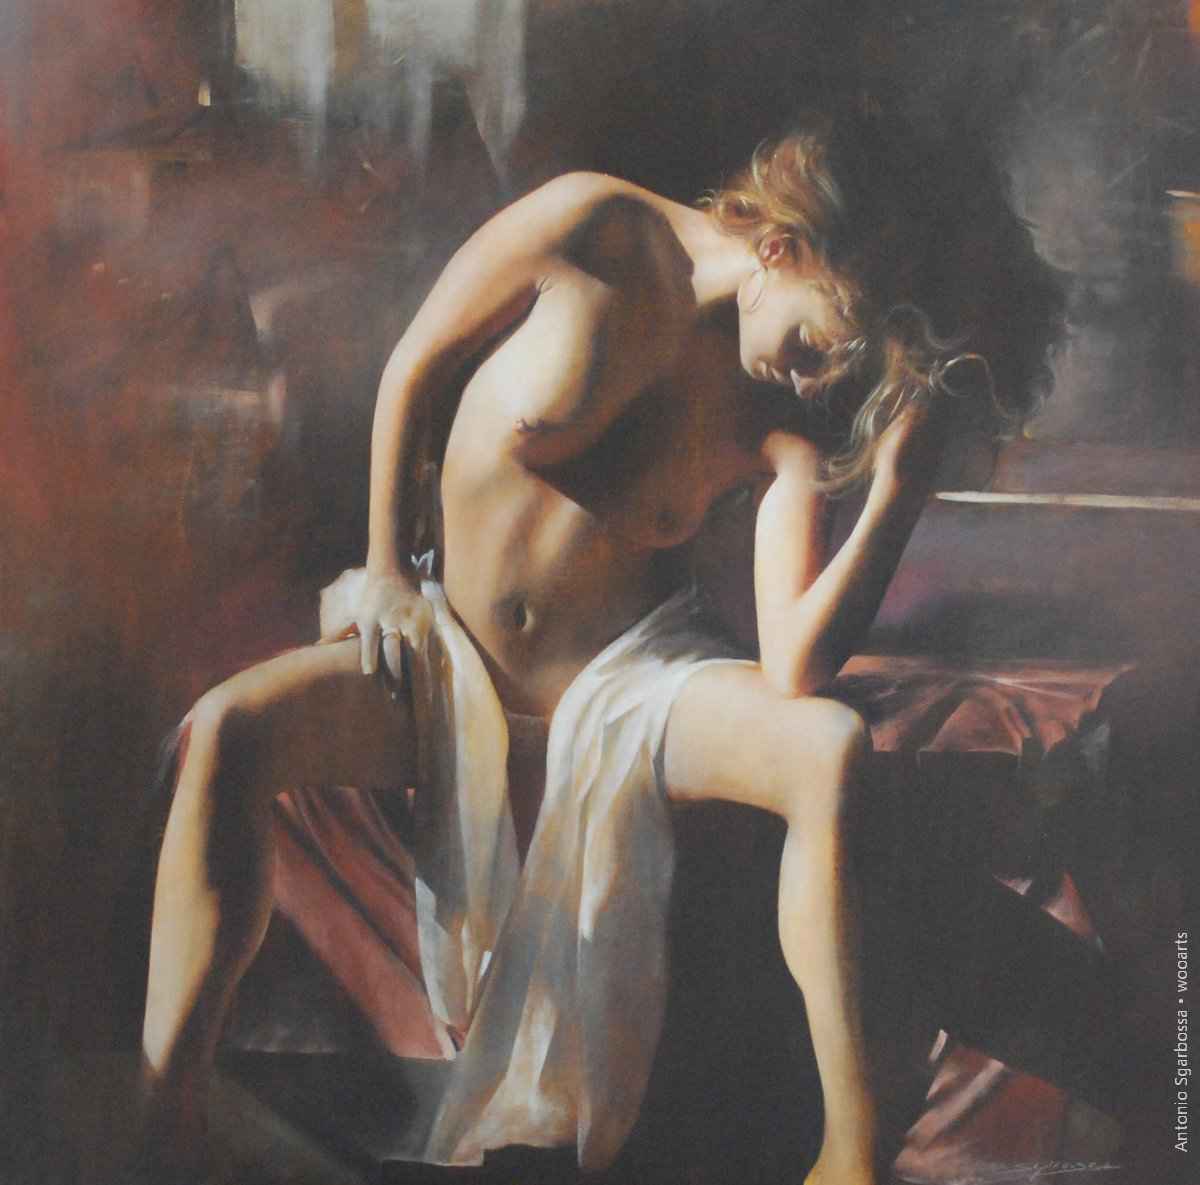 Antonio Sgarbossa Painting